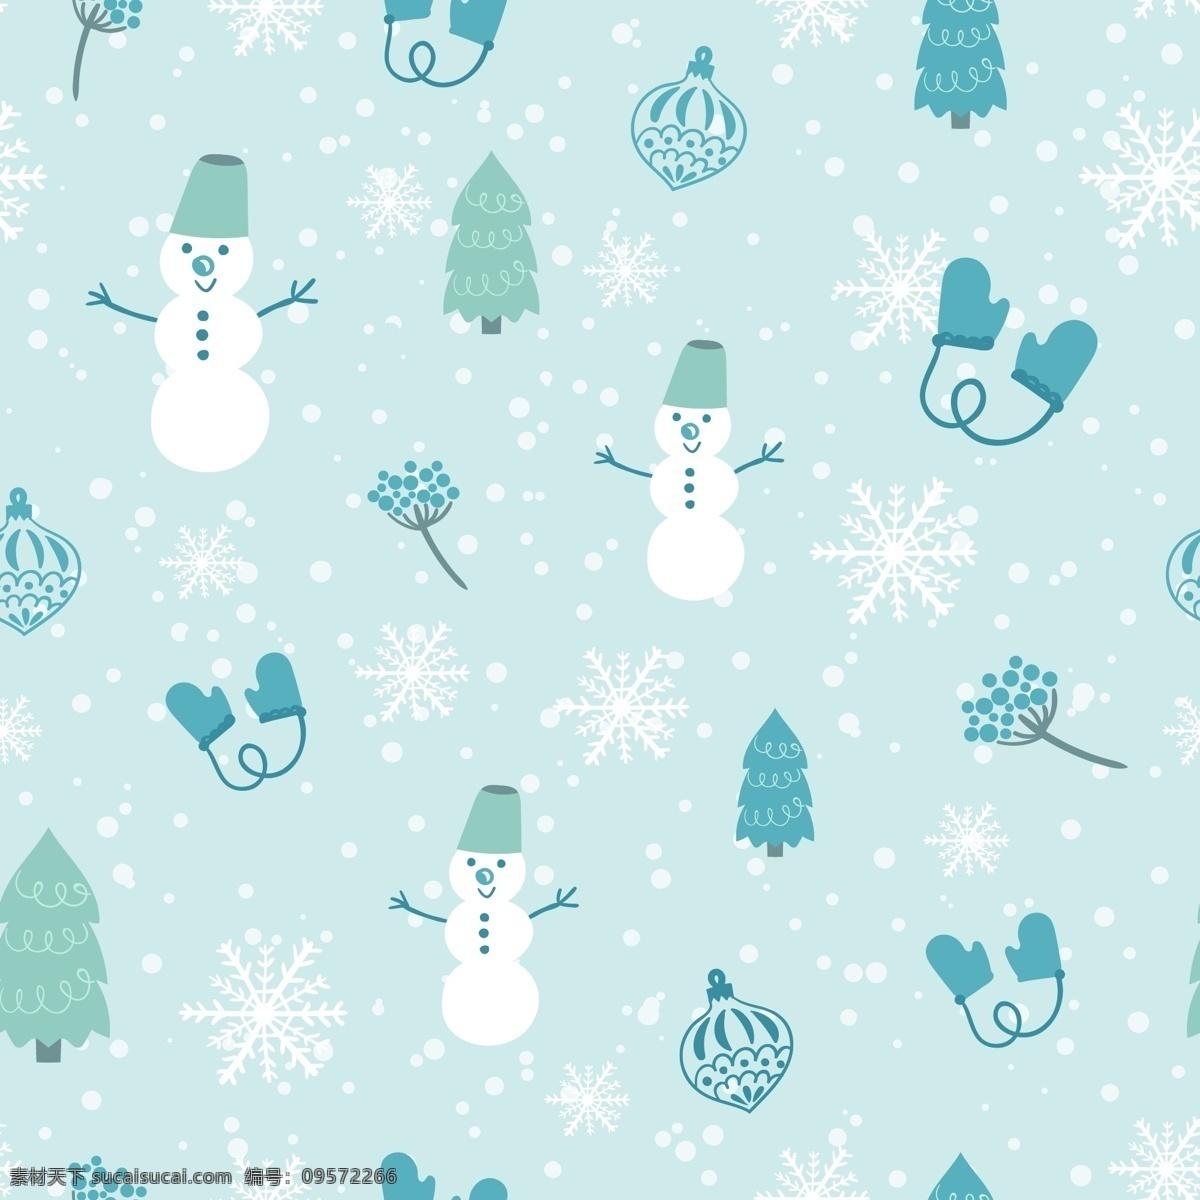 圣诞 卡通 矢量 合集 环保 可爱 简约 矢量素材 雪人 松树 排列 平面素材